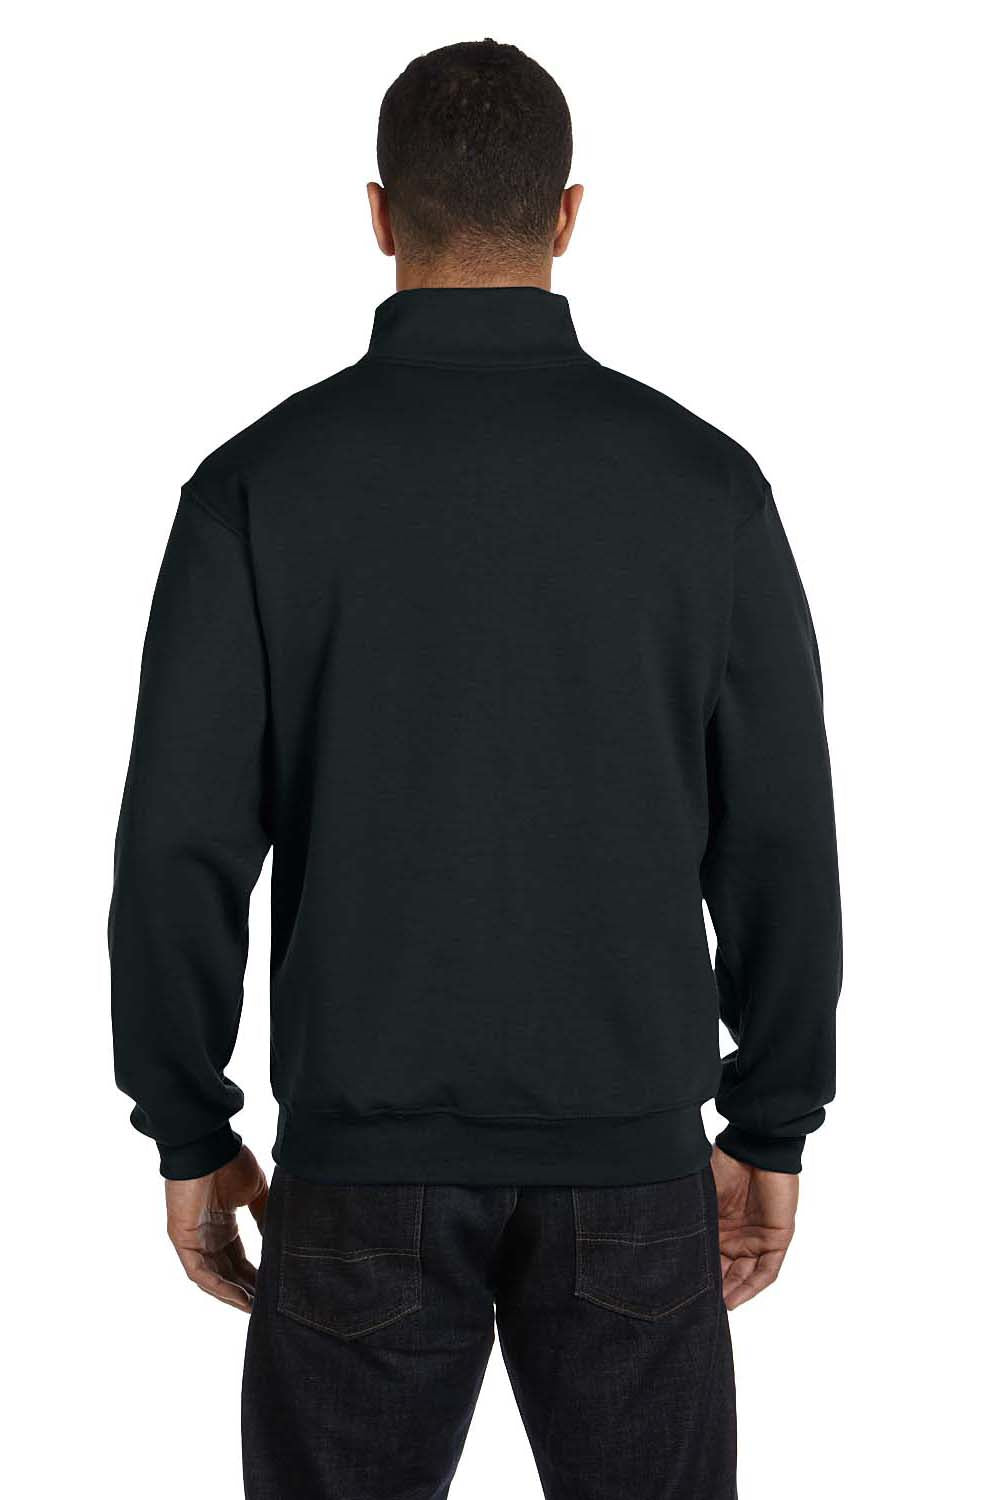 Jerzees 995M Mens NuBlend Fleece 1/4 Zip Sweatshirt Black Back